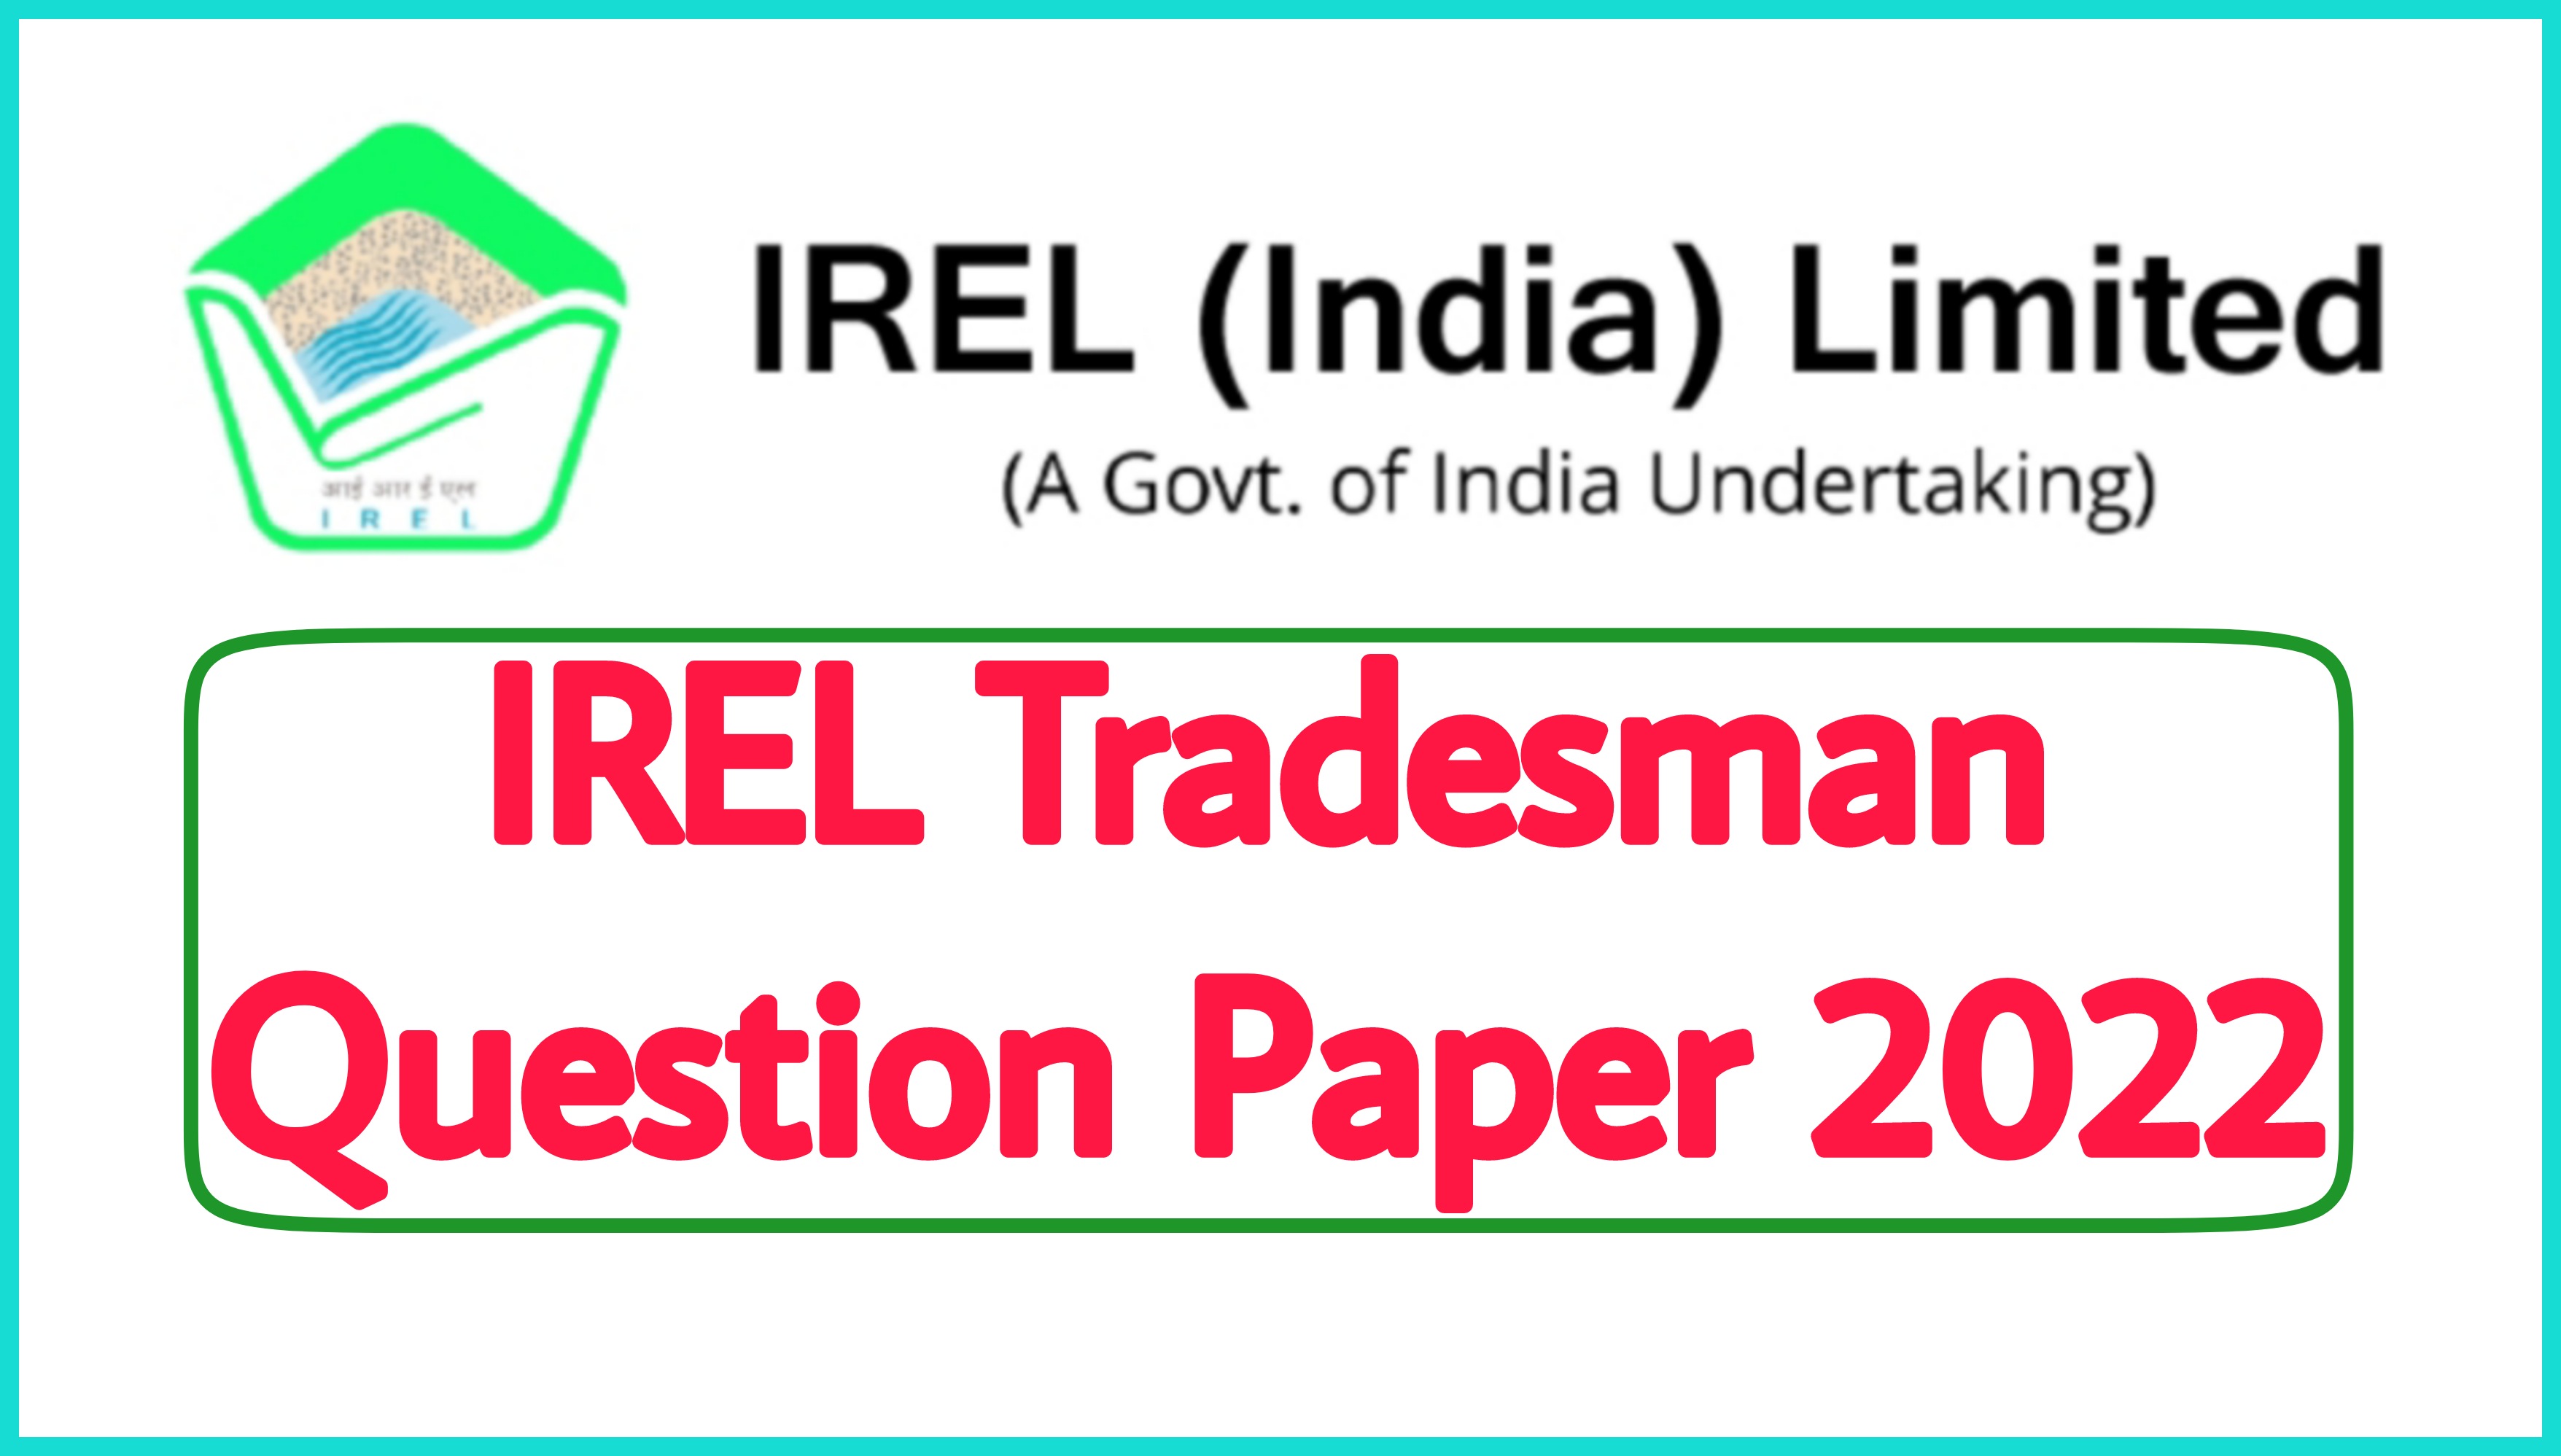 IREL Tradesman Question Paper 2022